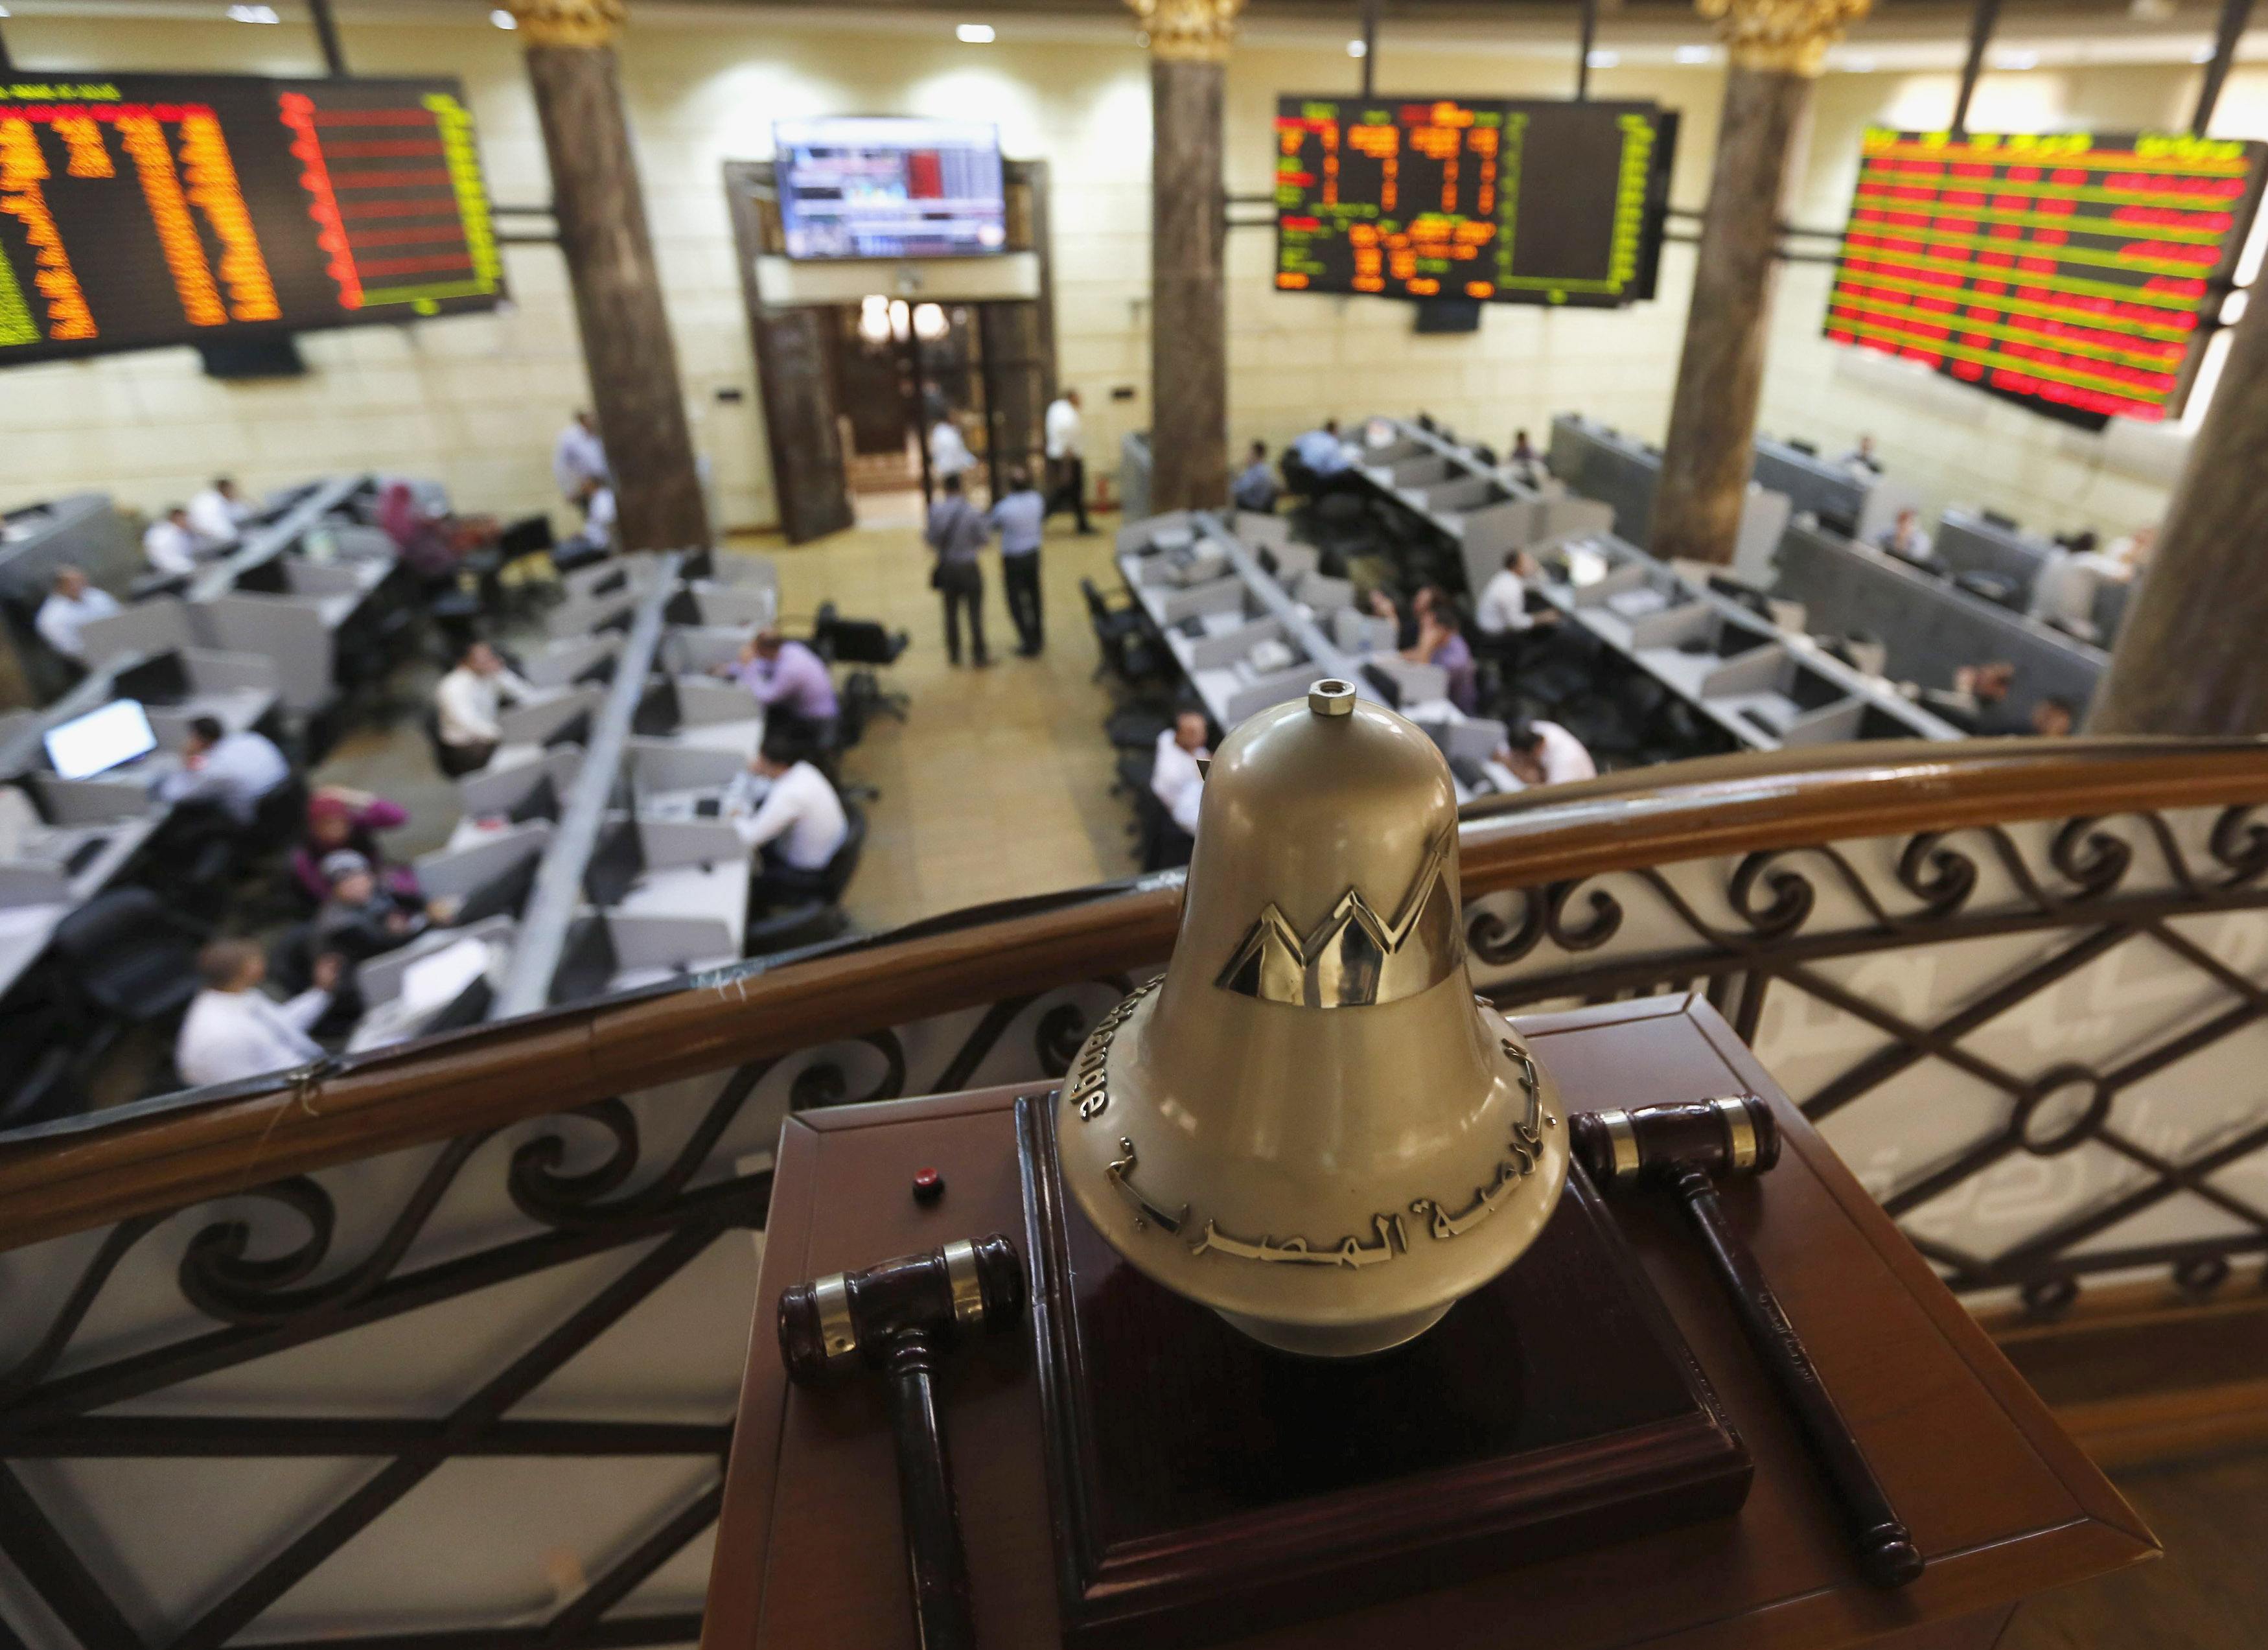   البورصة المصرية تتخذ إجراءات جديدة لمنع التلاعب على الأسهم